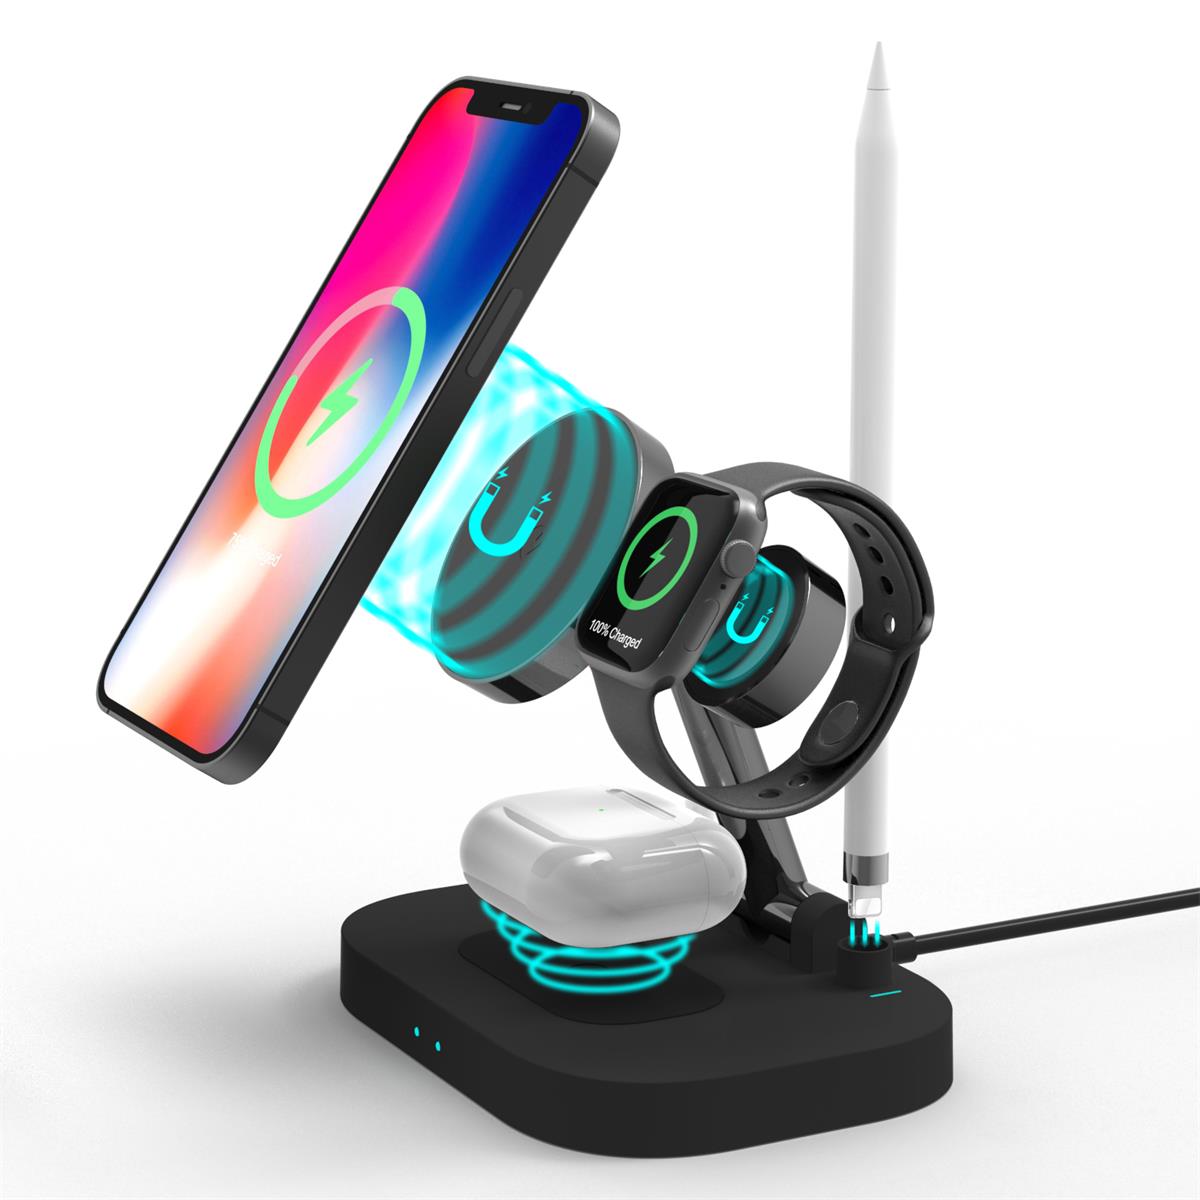 नया मॉडल फोल्डेबल मल्टीफ़क्शन वायरलेस चार्जर: चार्जिंग स्टैंड, iPhone डॉक्स और बहुत कुछ